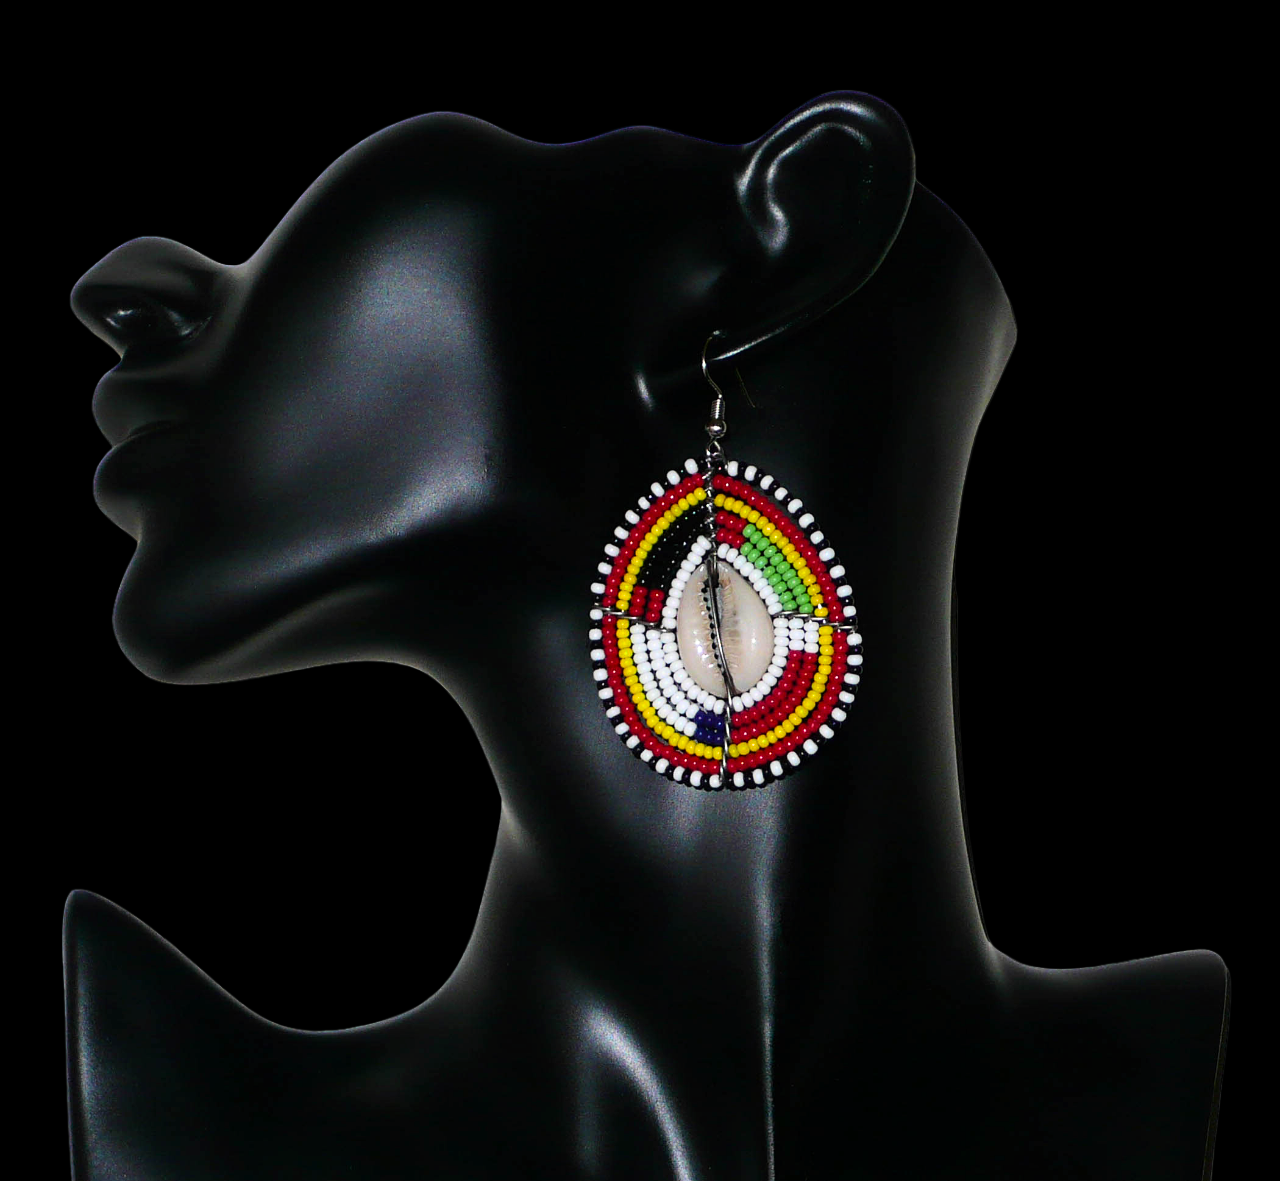 Boucles d'oreilles africaines aux couleurs et motifs ethniques Massai. Elles se composent de perles de rocaille multicolores enfilées sur des fils de fer montés en forme de boucliers Massai ; des coquillages sont incrustés en leur centre. Elles mesurent 7 cm de long et 4 cm de large et se portent avec des crochets en acier inoxydable sur des oreilles percées. Timeless Fineries